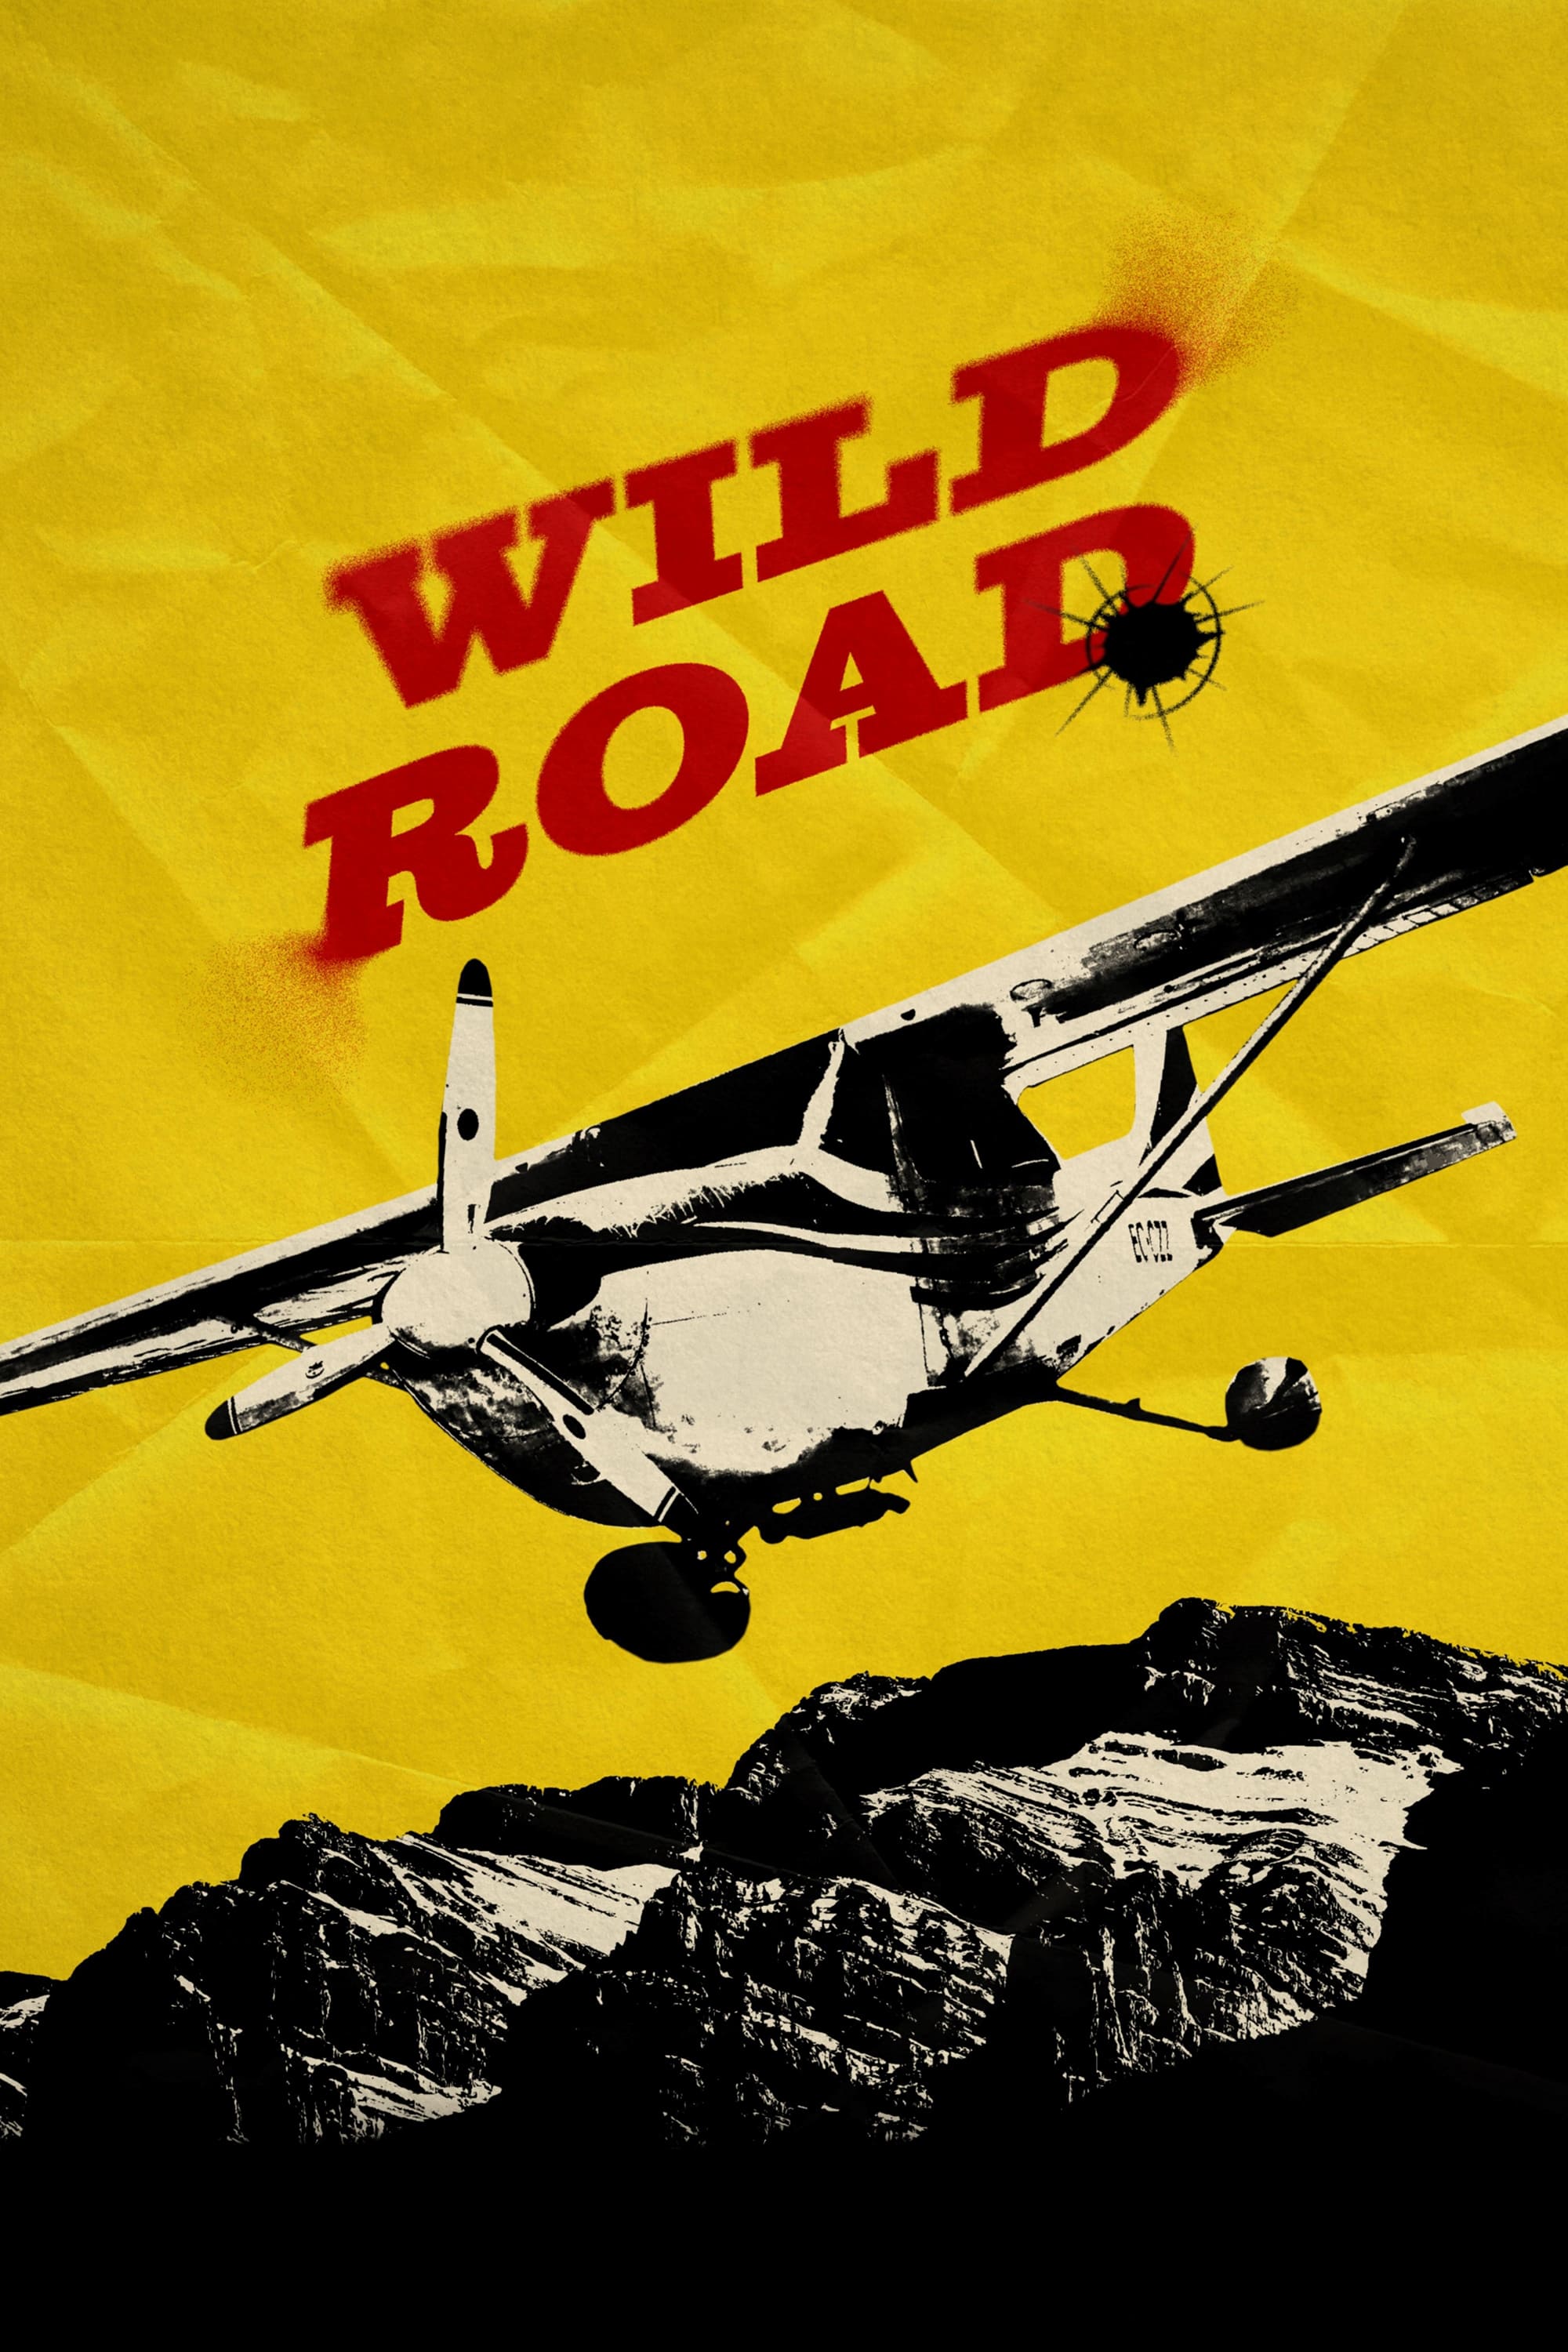 Wild Road